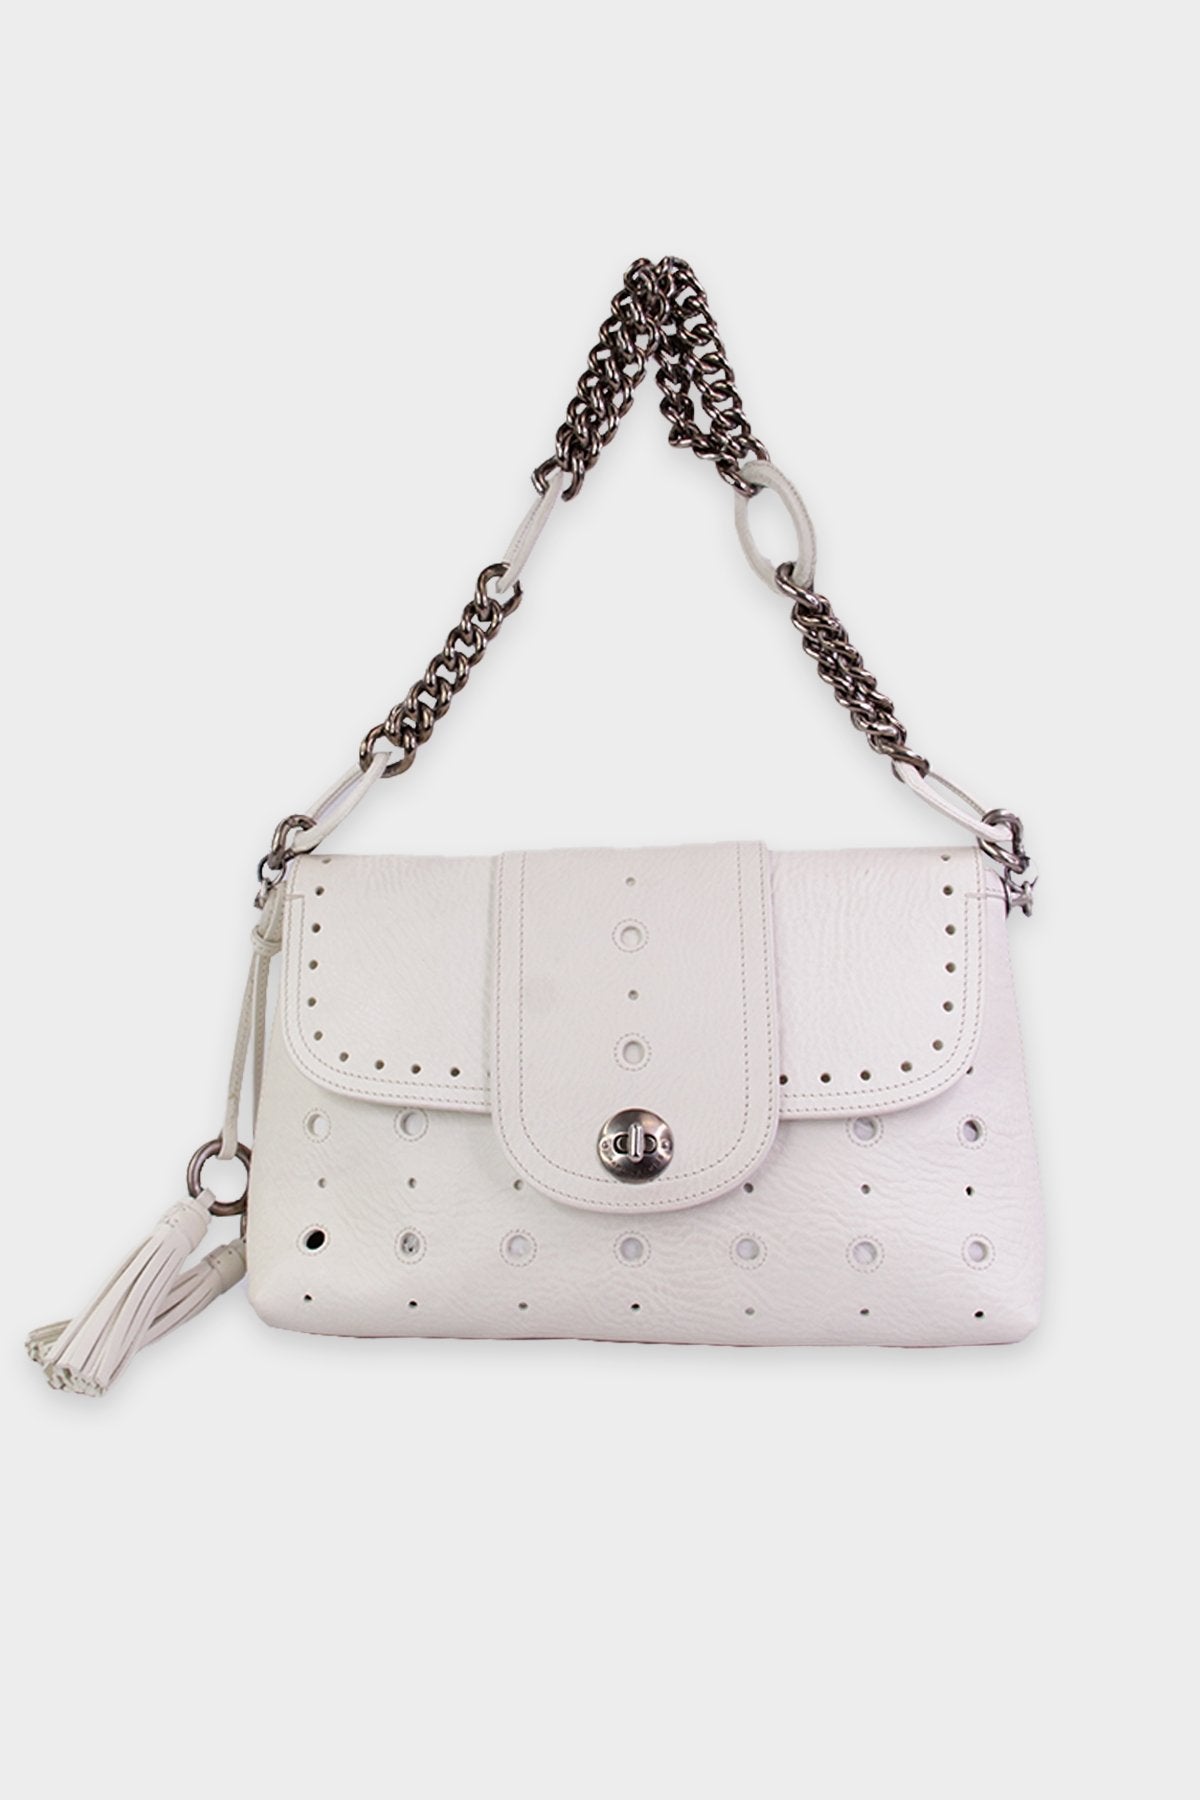 Marc Jacobs White Crossbody Leather Handbag - shop-olivia.com